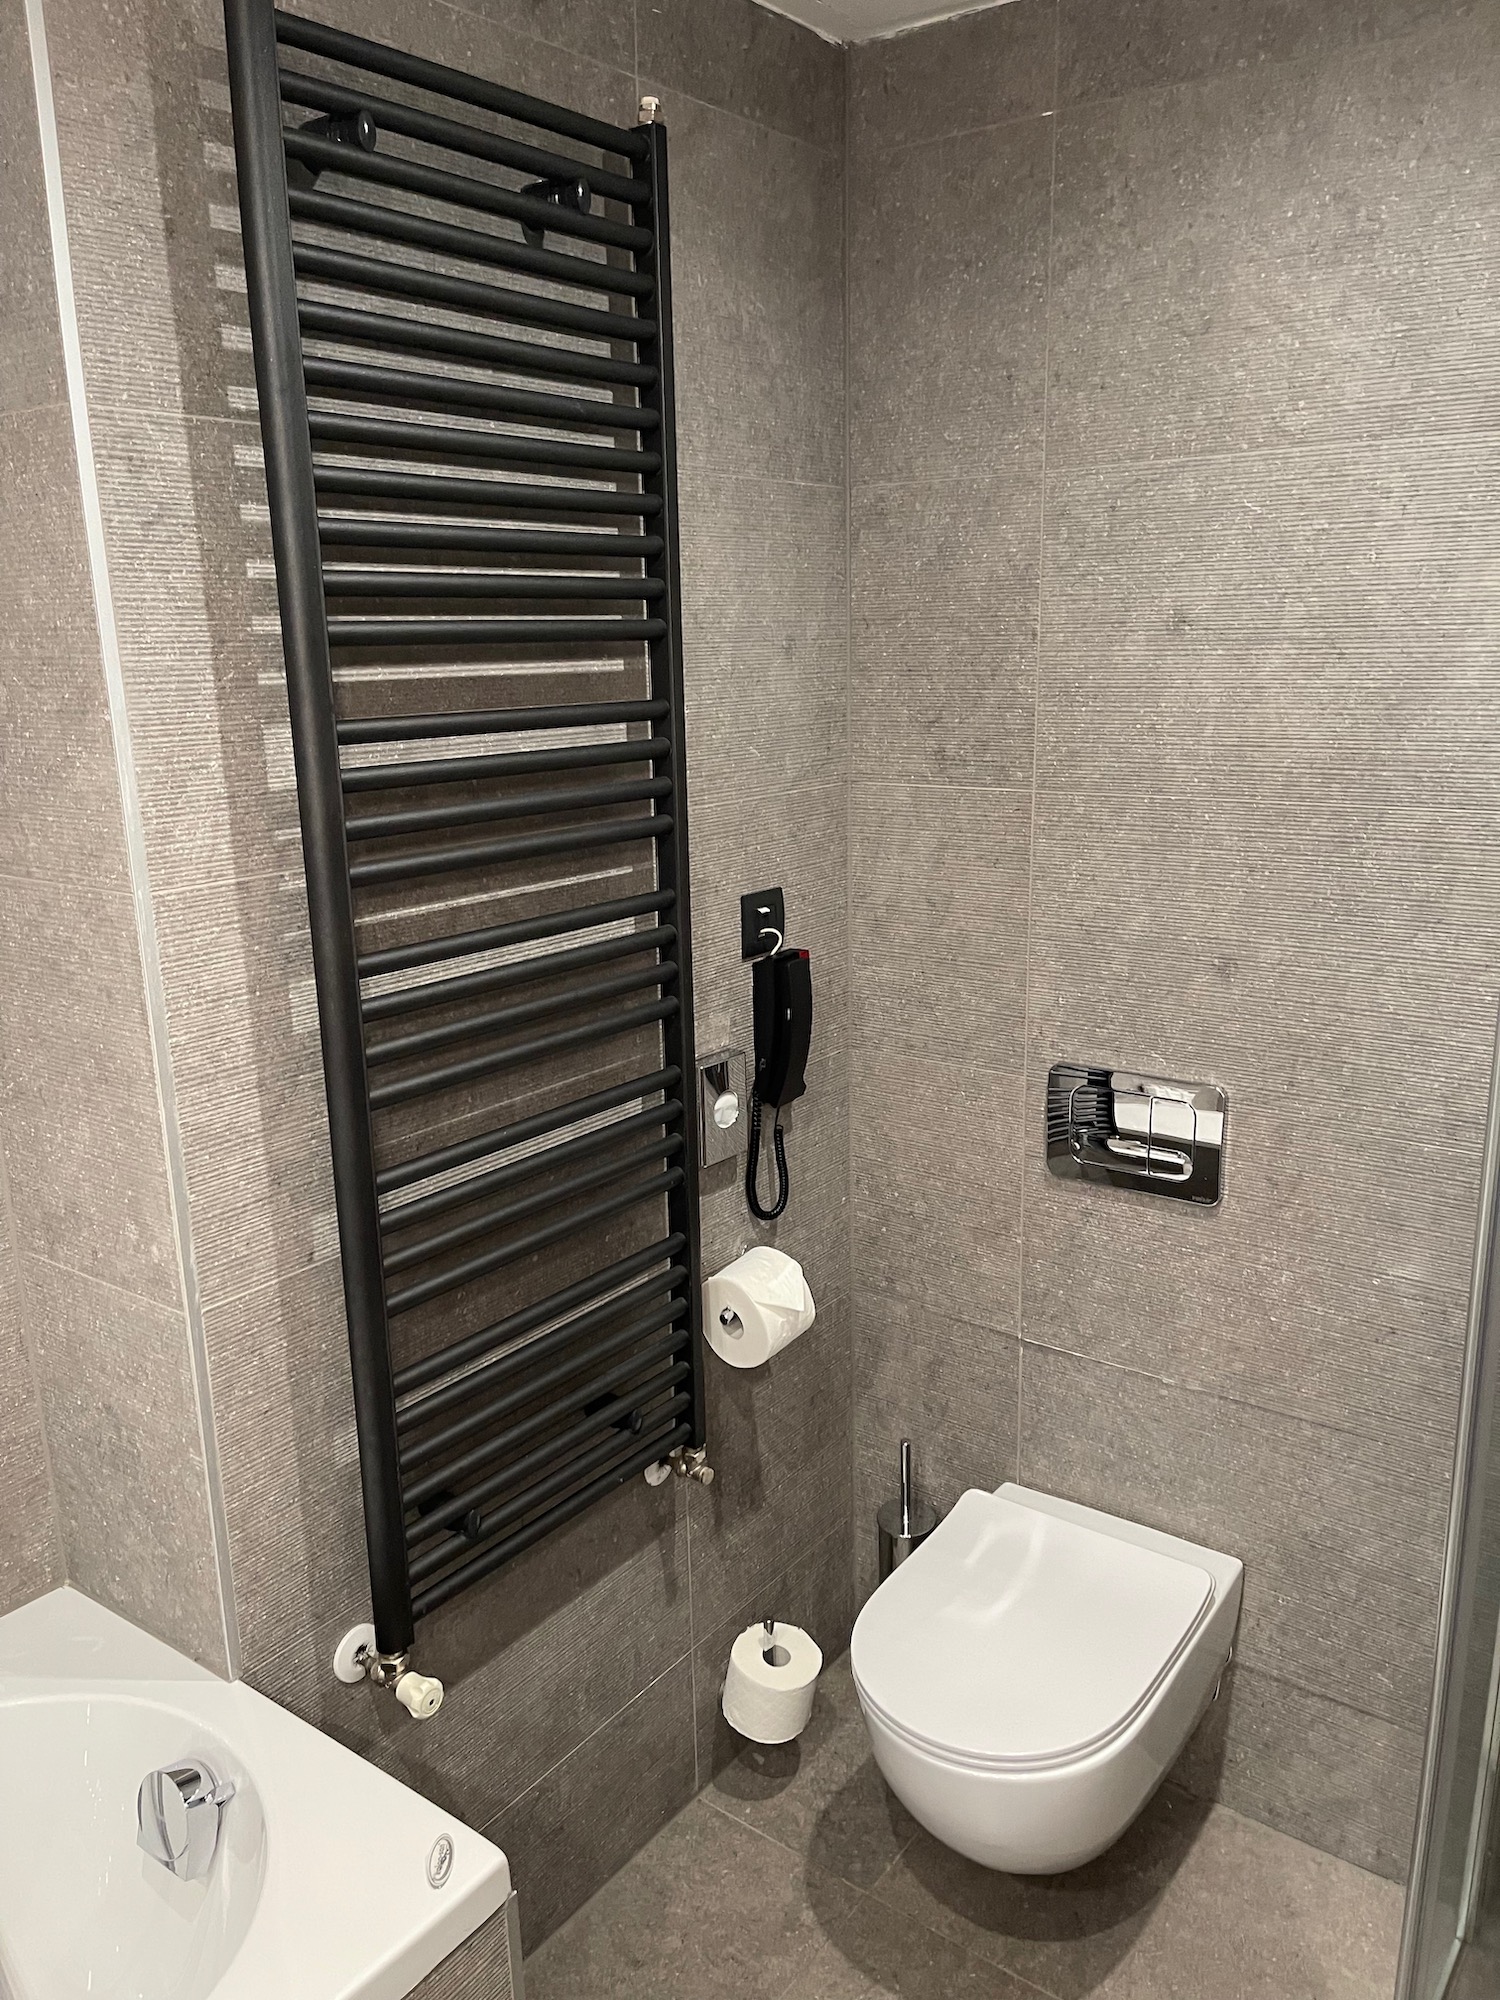 a bathroom with a black towel rack